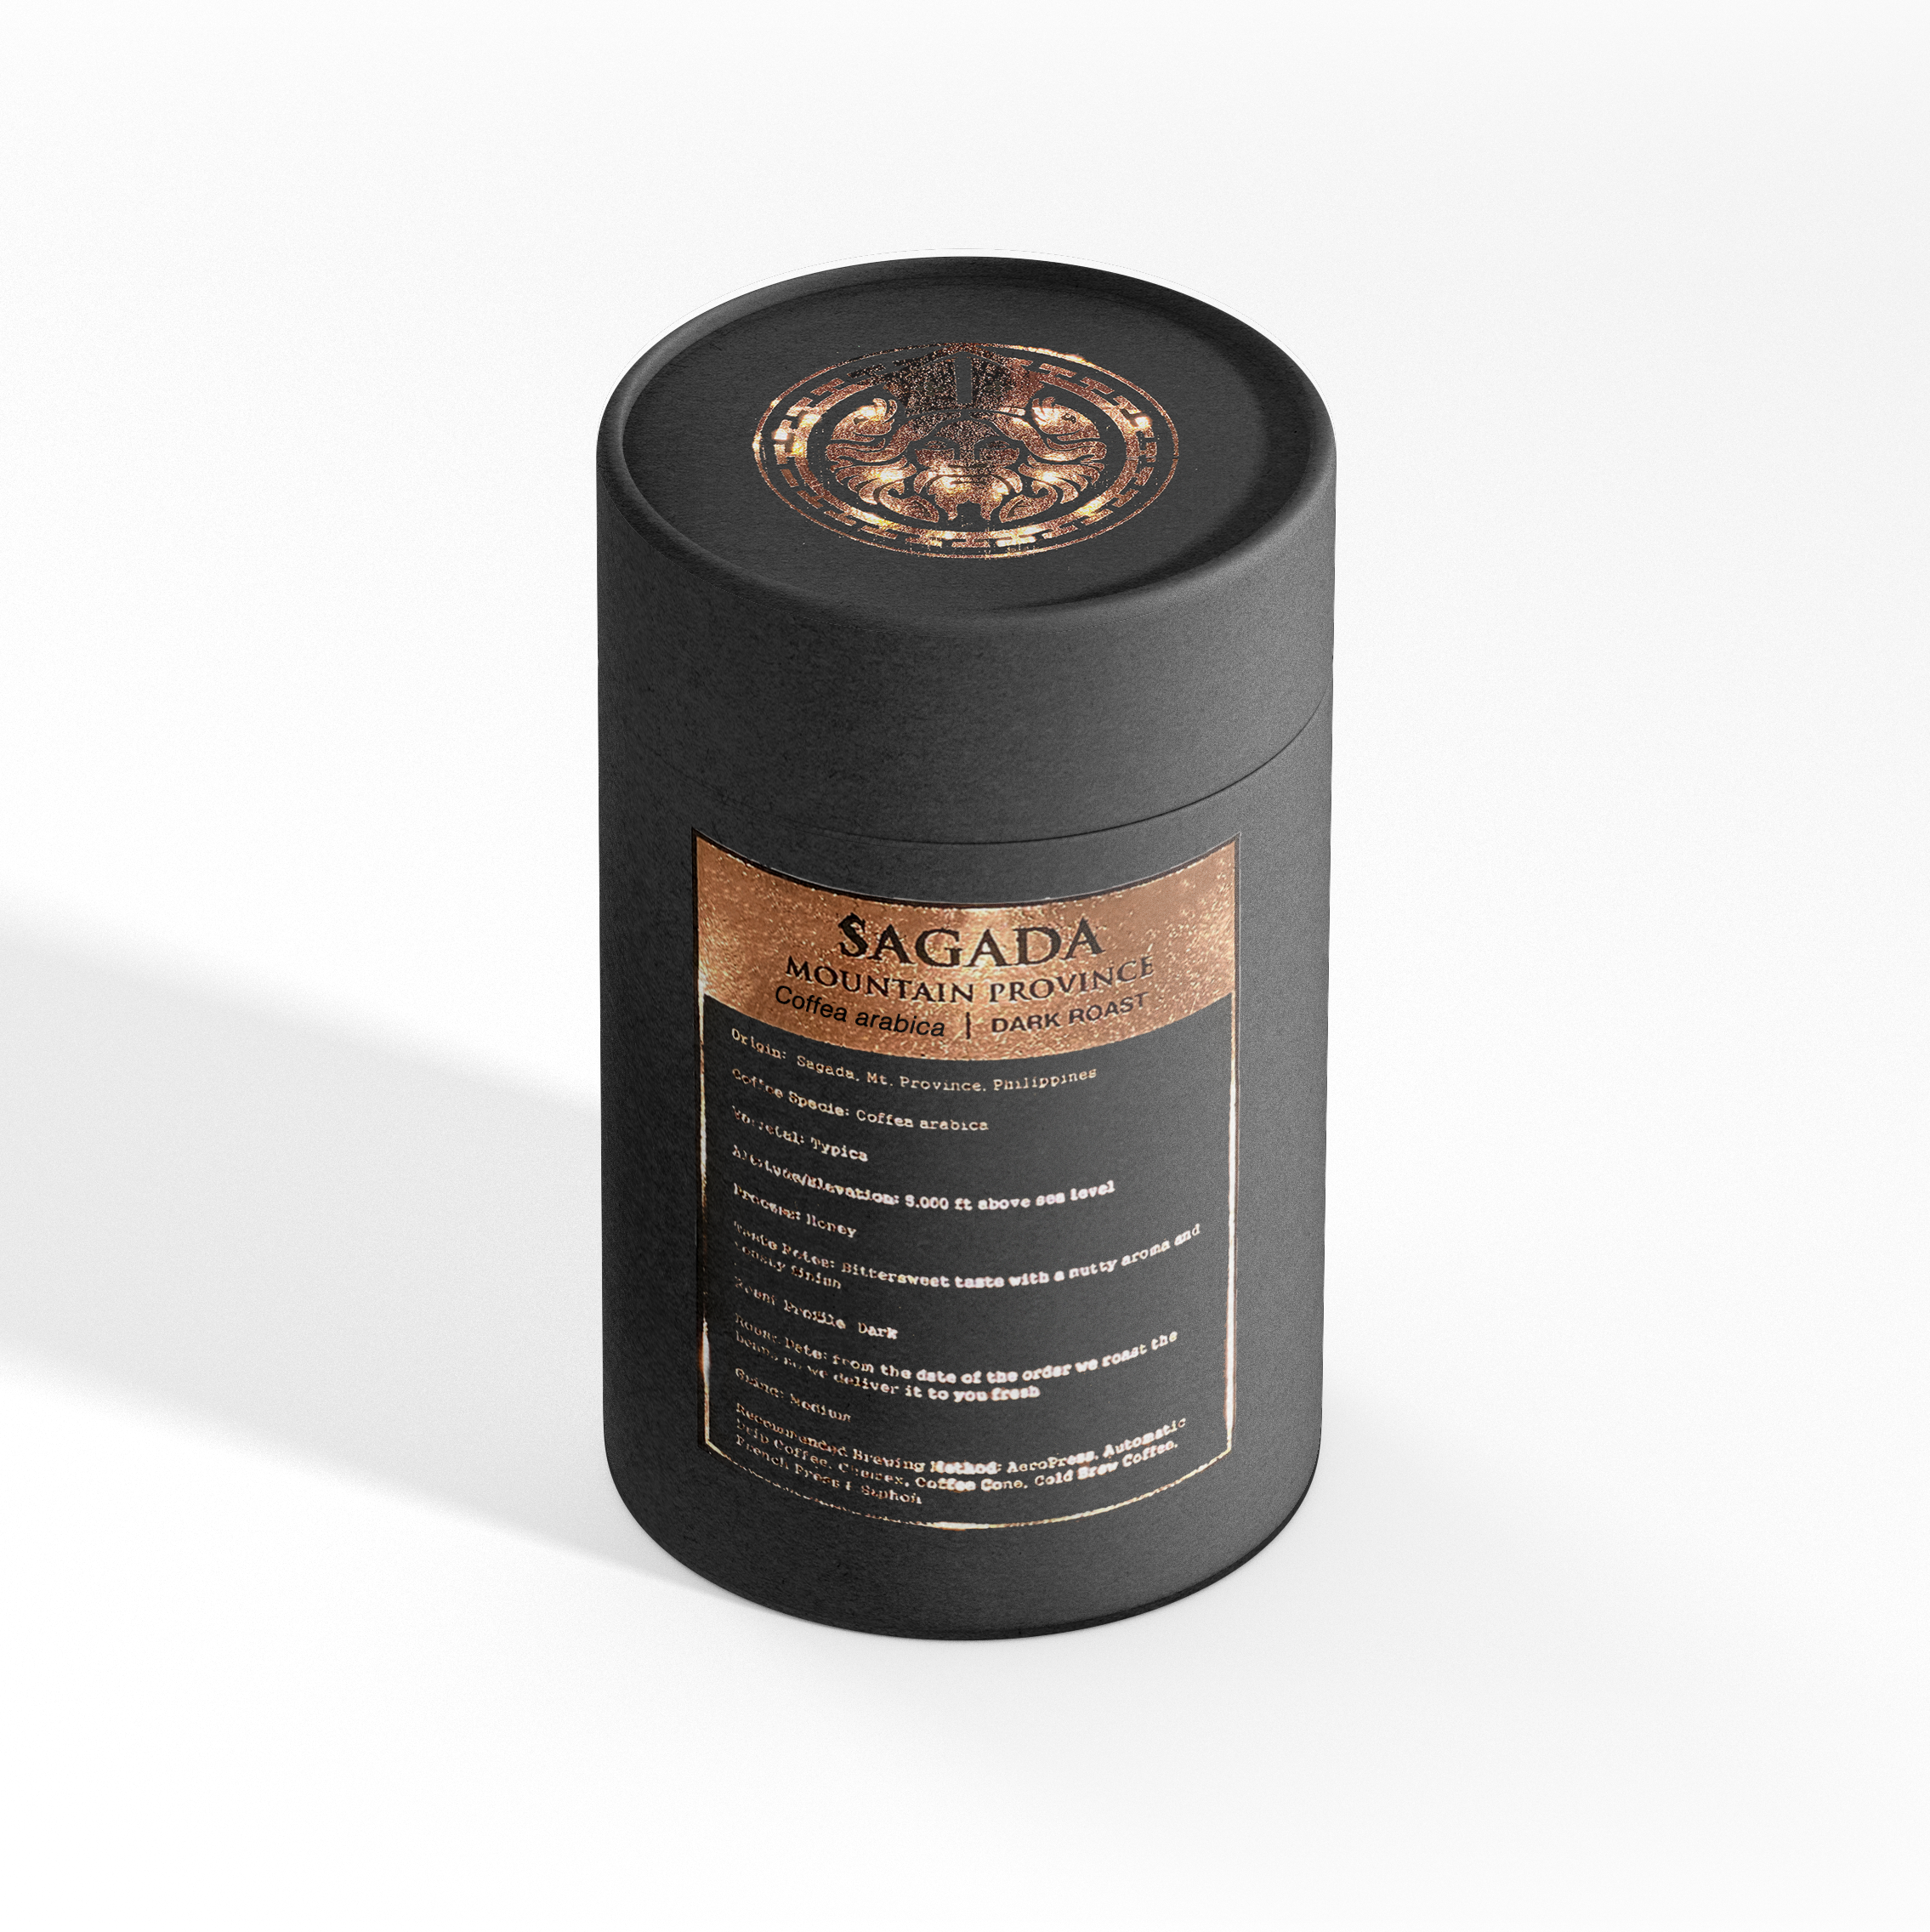 SAGADA MT. PROVINCE | Coffea arabica | Dark Roast